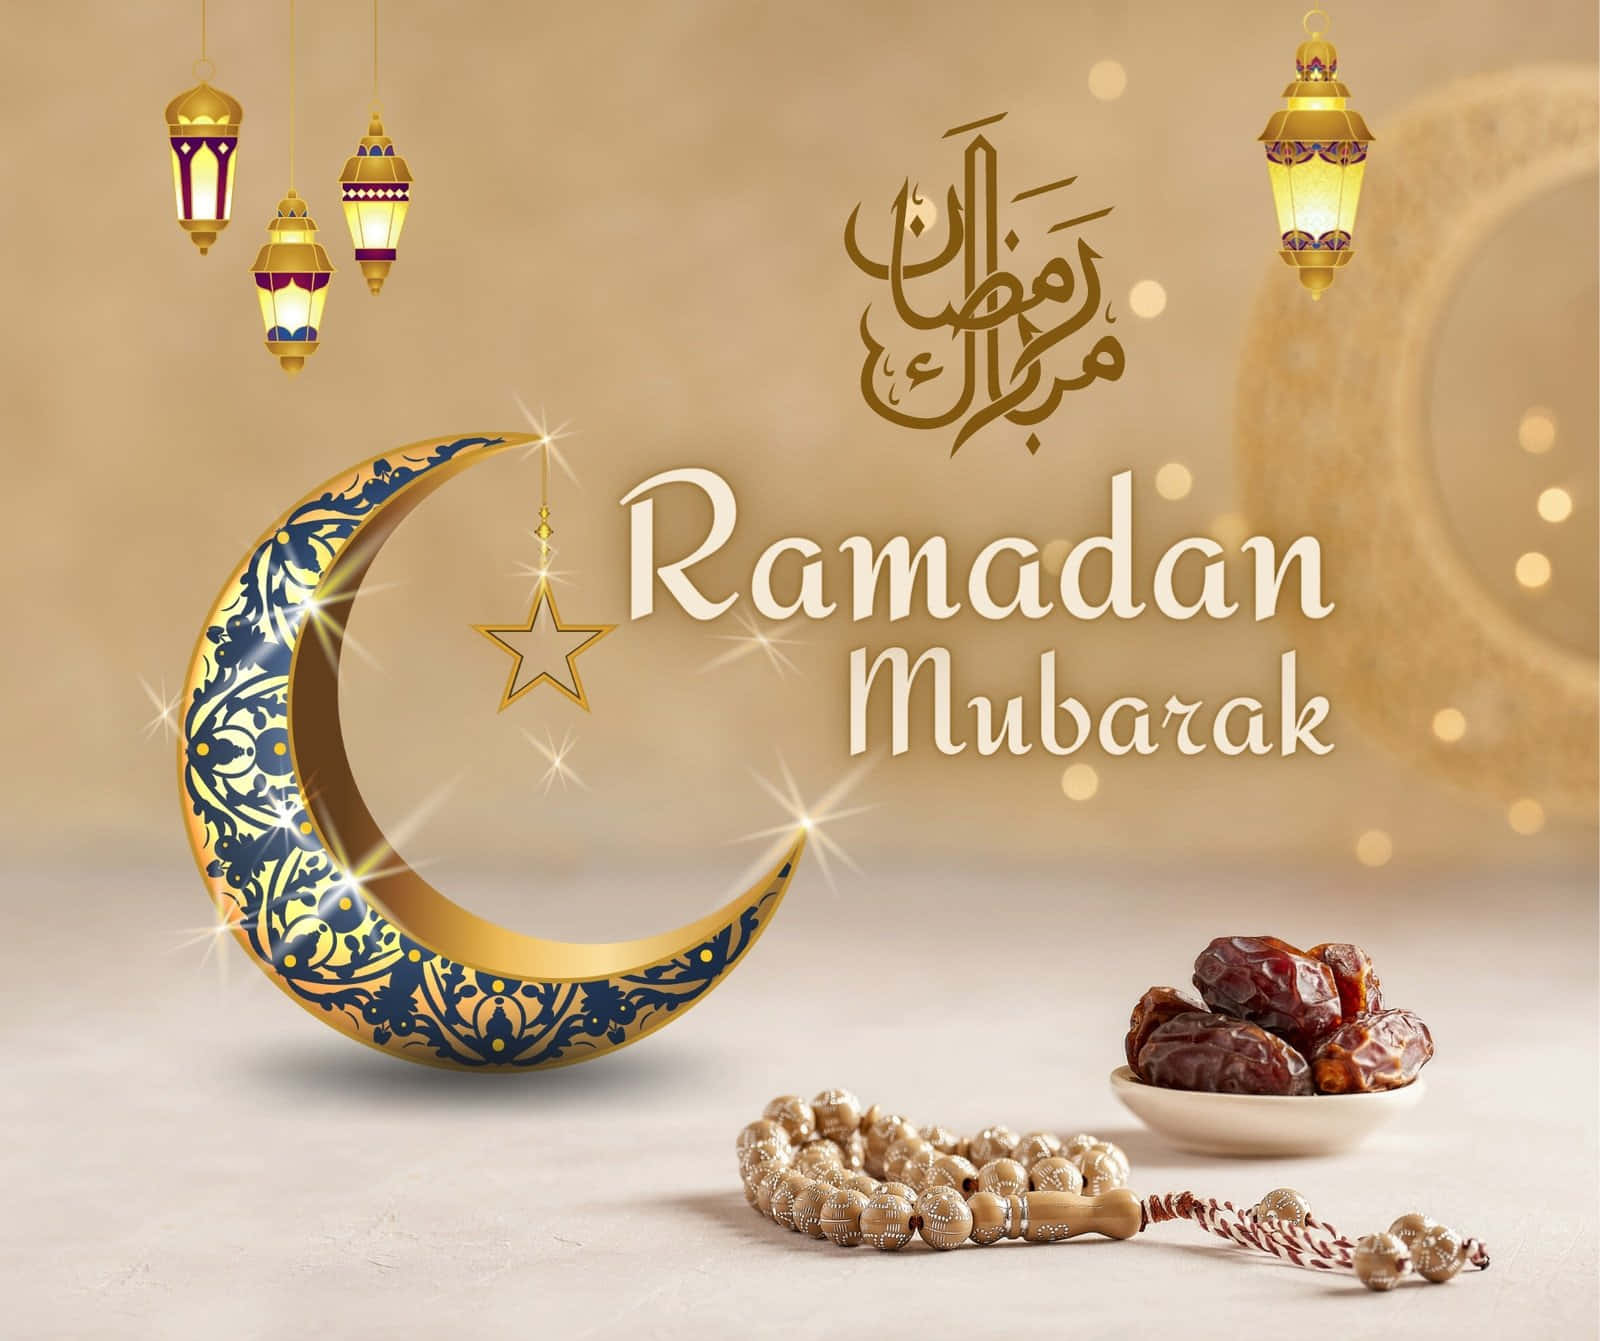 Immaginedel Ramadan Con Luna D'oro